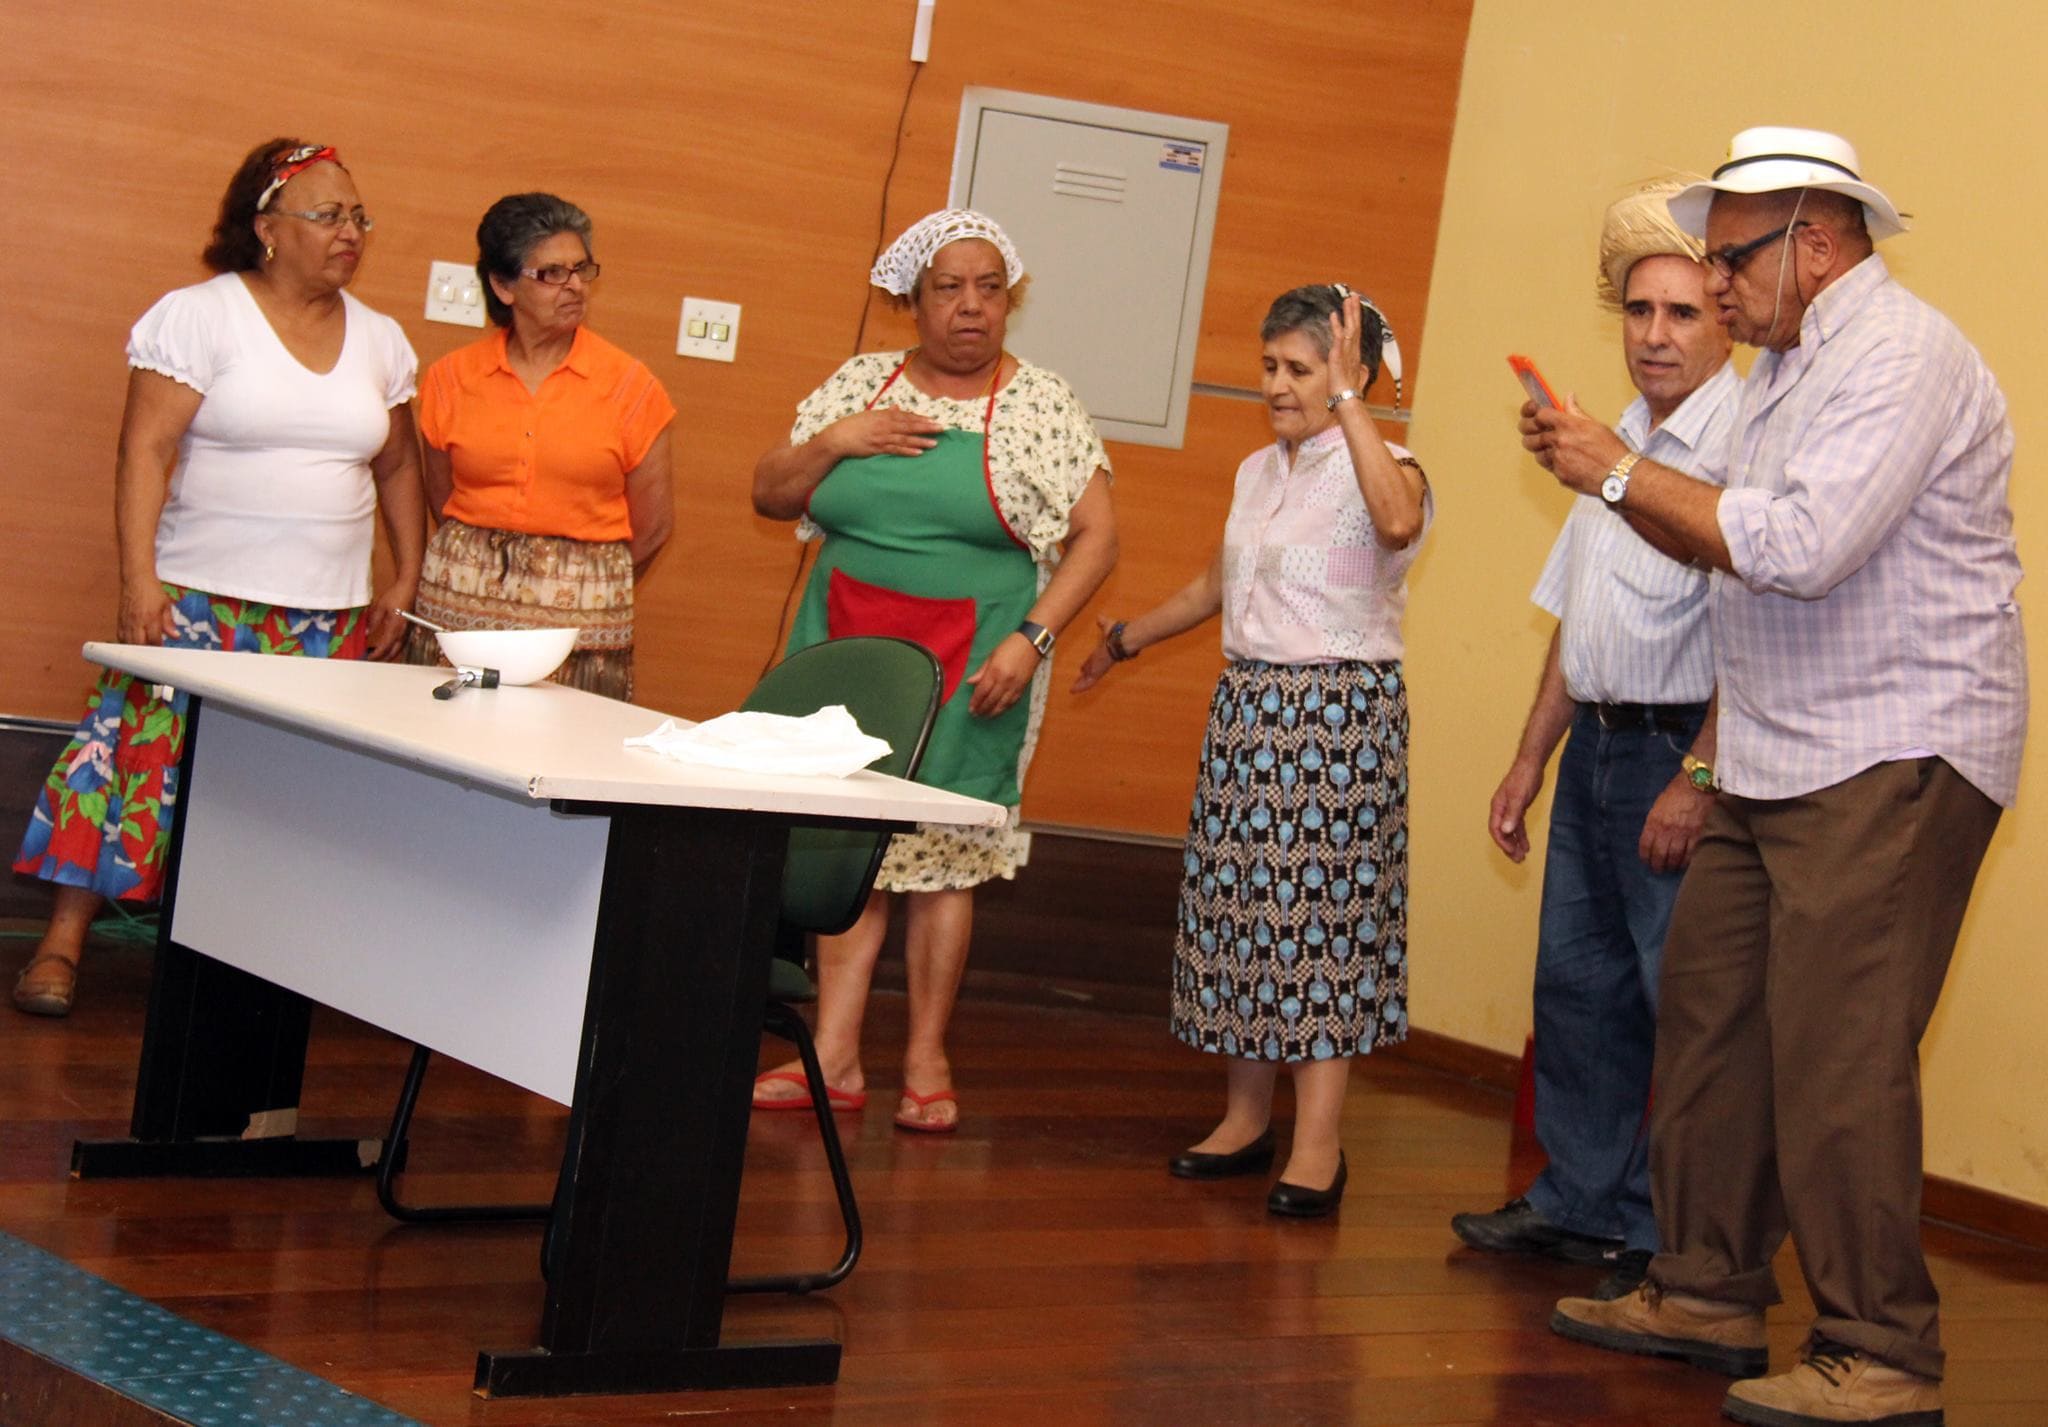 Cursos gratuitos para maiores de 60 anos. Crédito: Gabriel Almeida/EACH/Divulgação